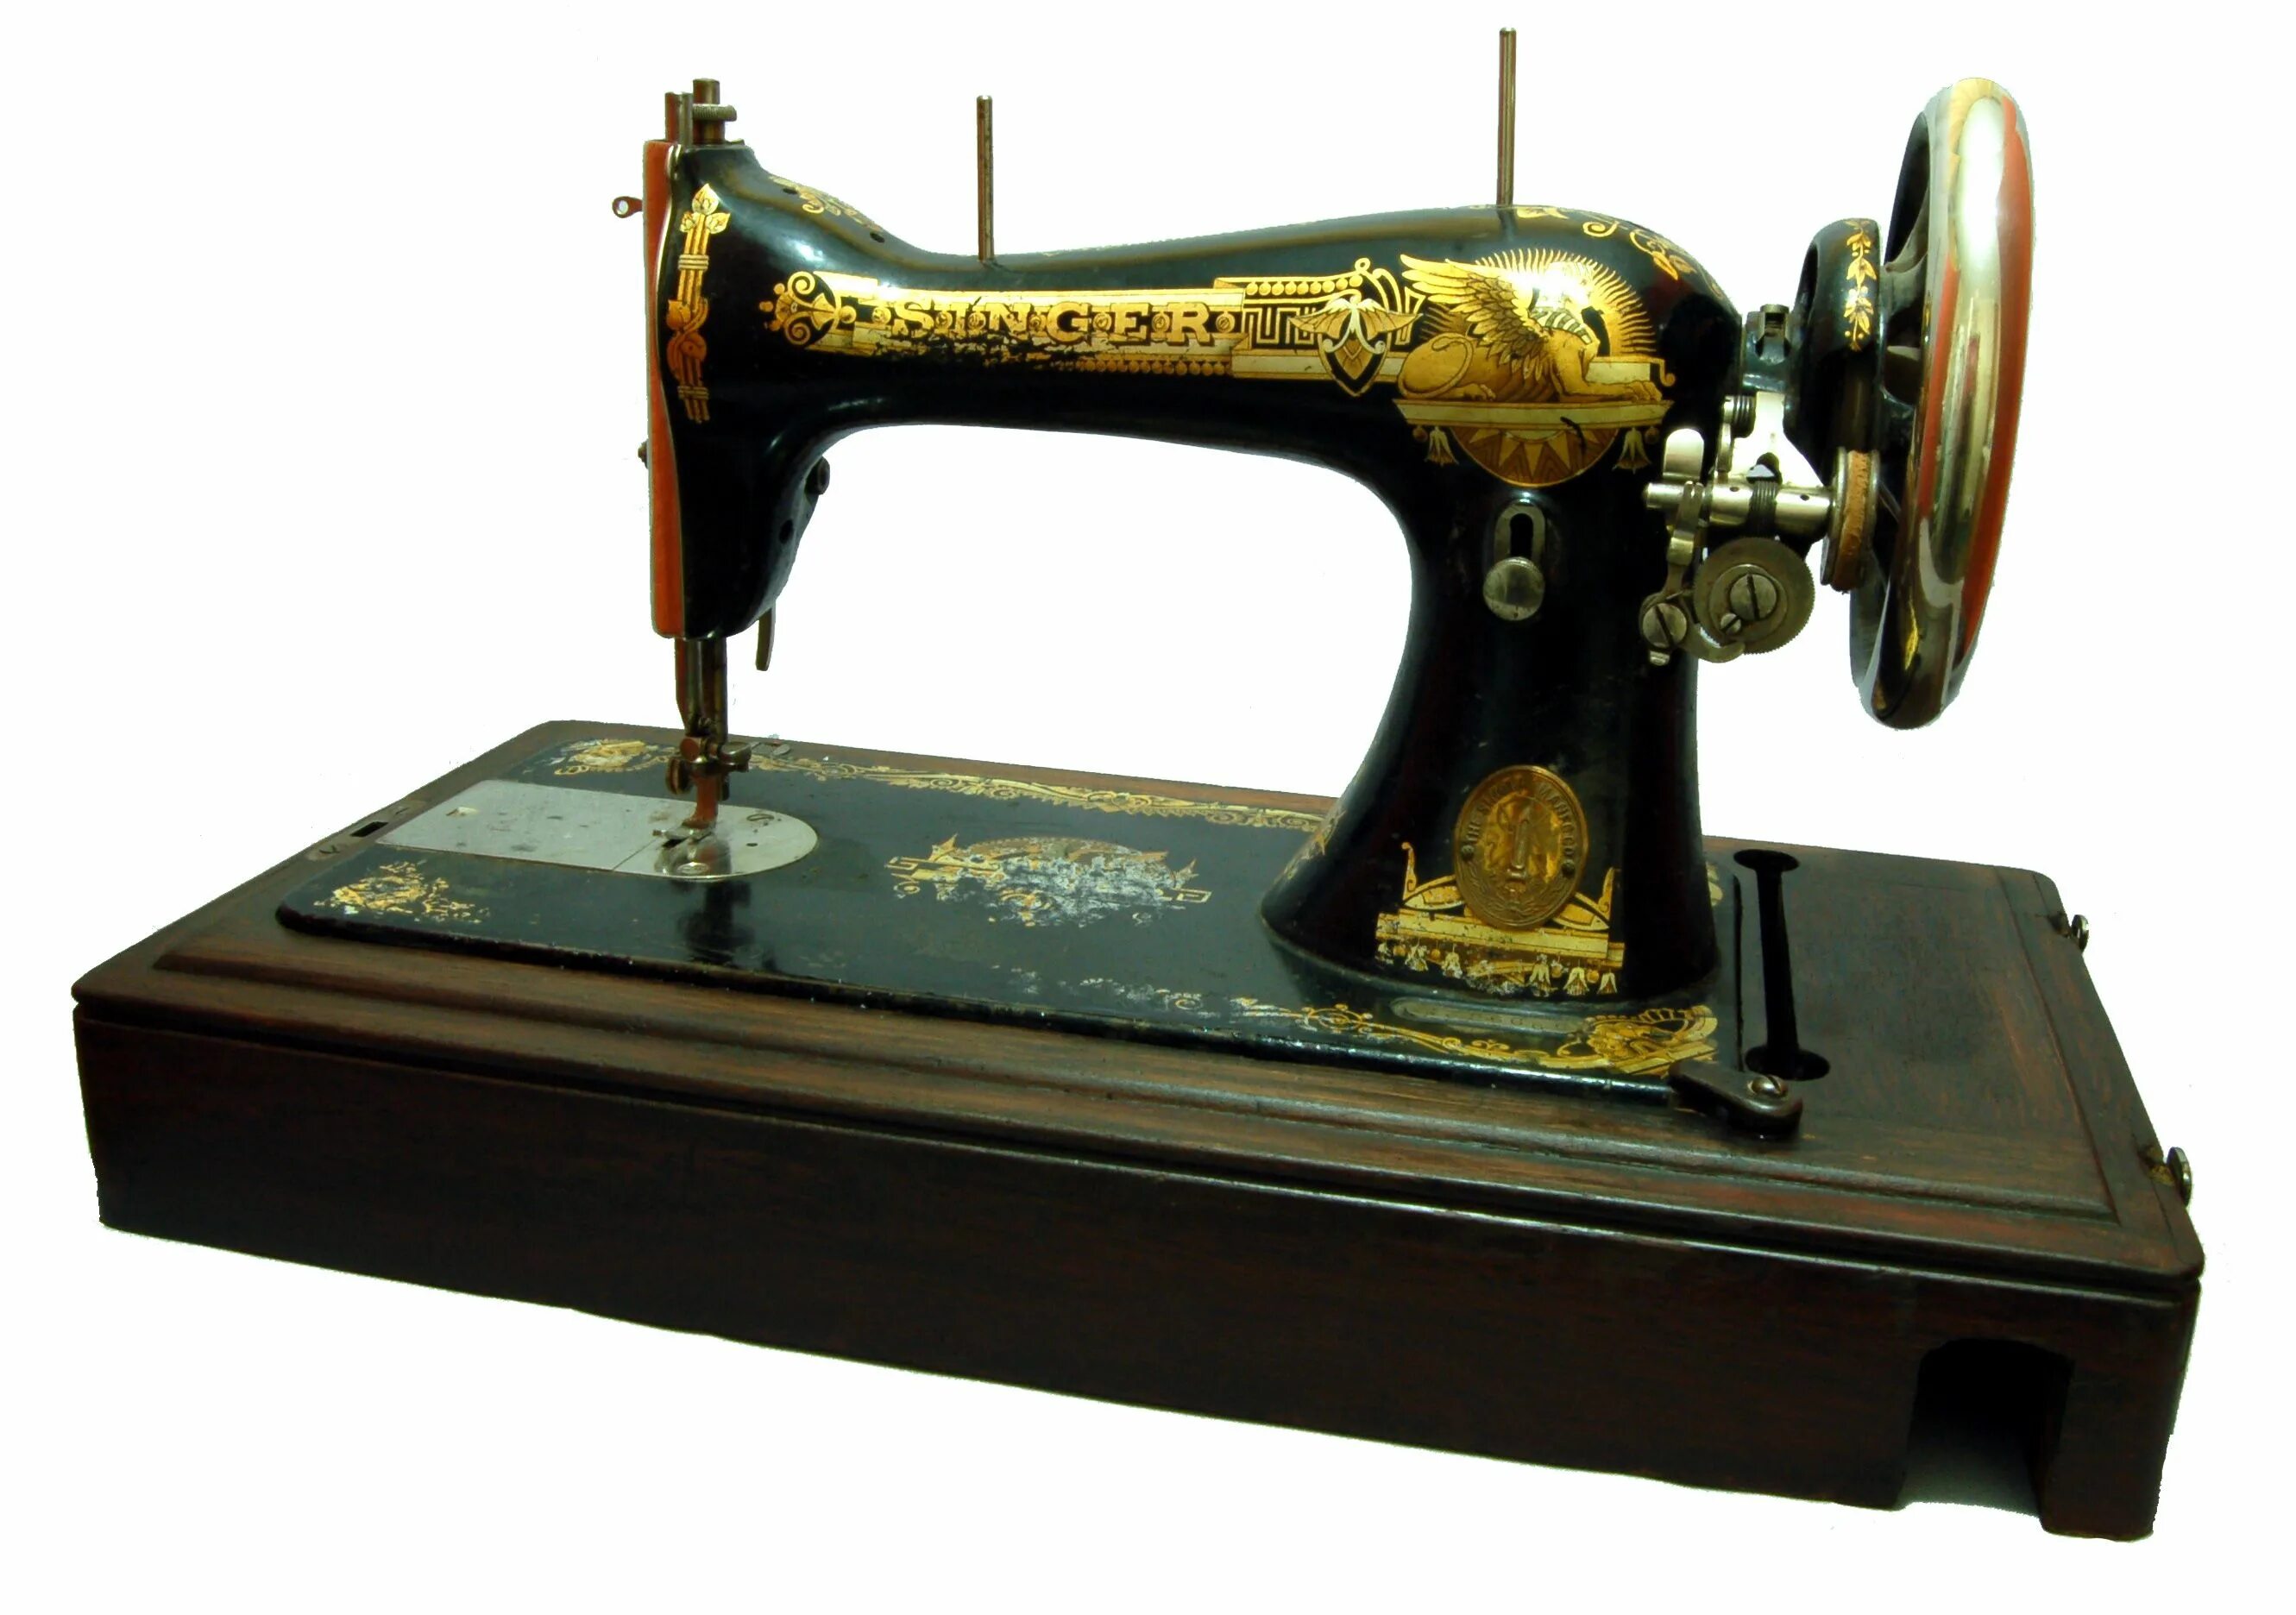 Швейная машинка Зингер 1886. Зингер швейная машинка 1910 года. Швейная машинка Зингер 1911 года. Швейная машинка Зингер 1886 года. Сон швейная машинка